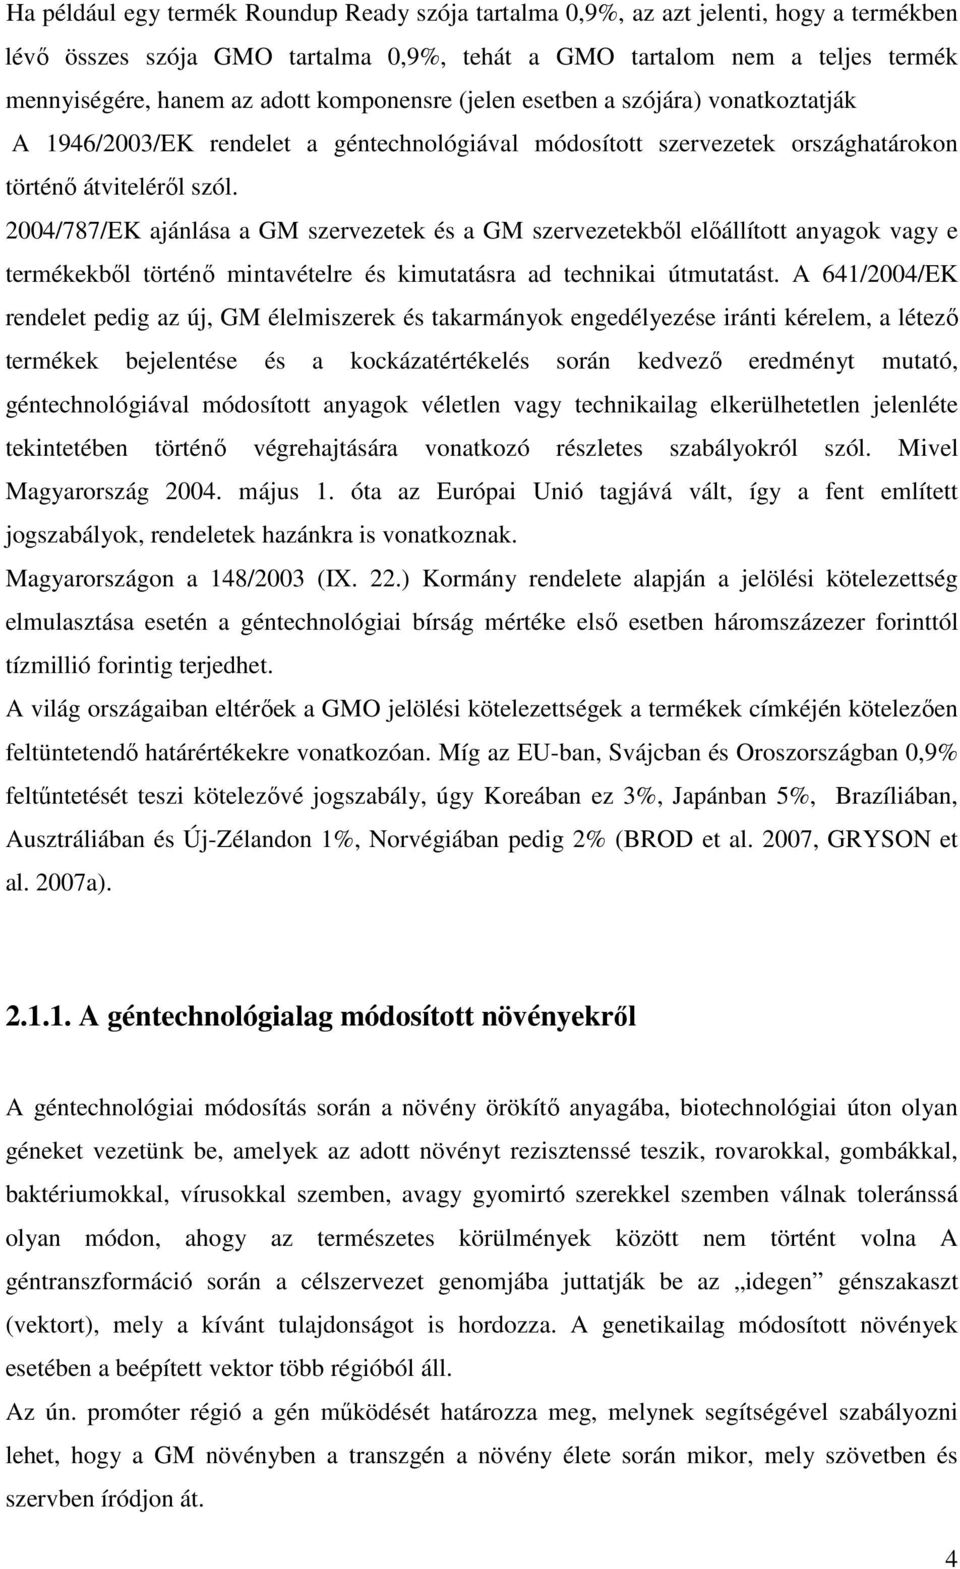 2004/787/EK ajánlása a GM szervezetek és a GM szervezetekbıl elıállított anyagok vagy e termékekbıl történı mintavételre és kimutatásra ad technikai útmutatást.